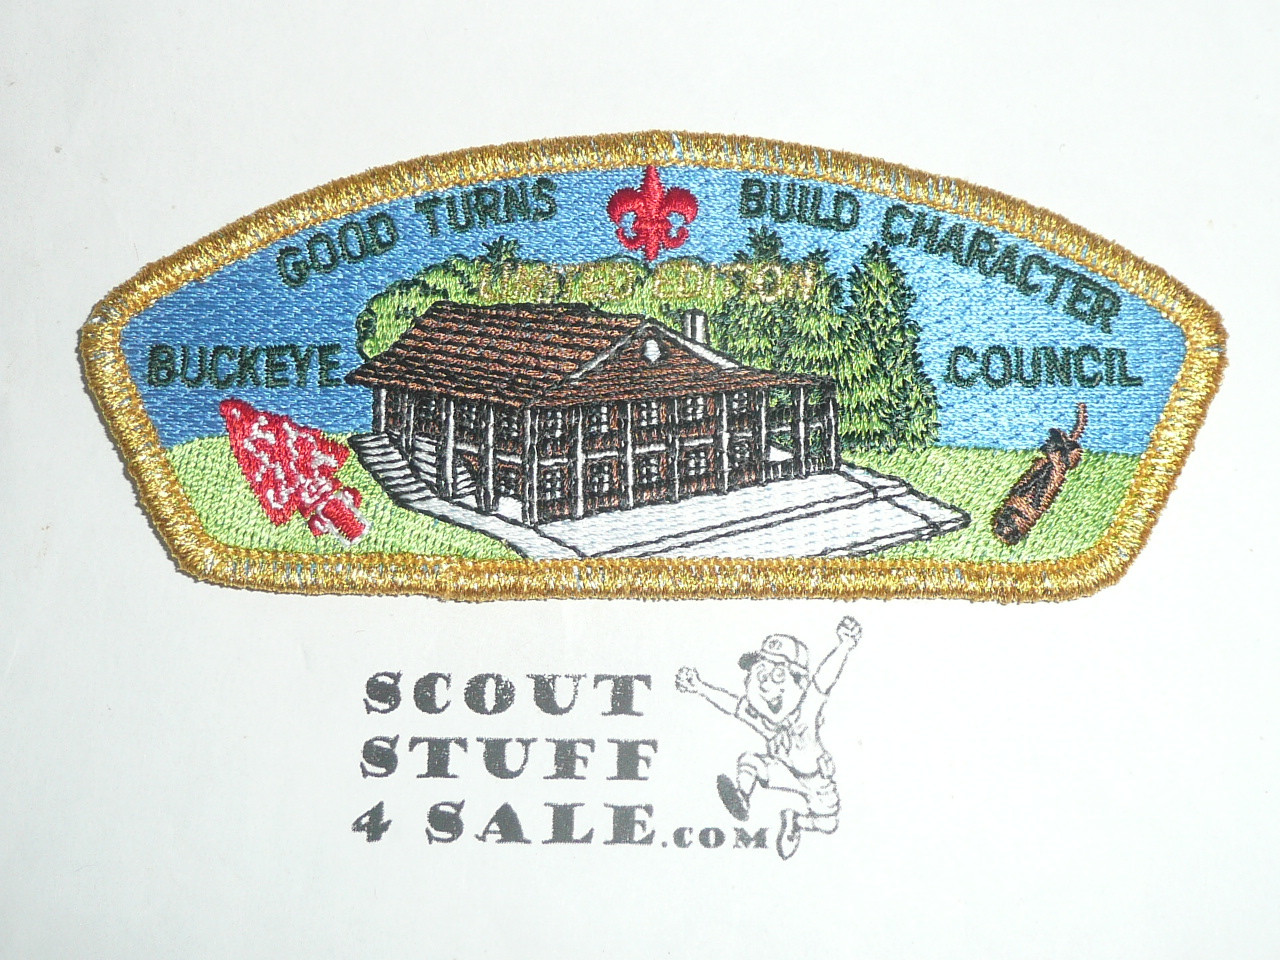 Buckeye Council sa12 CSP - Scout